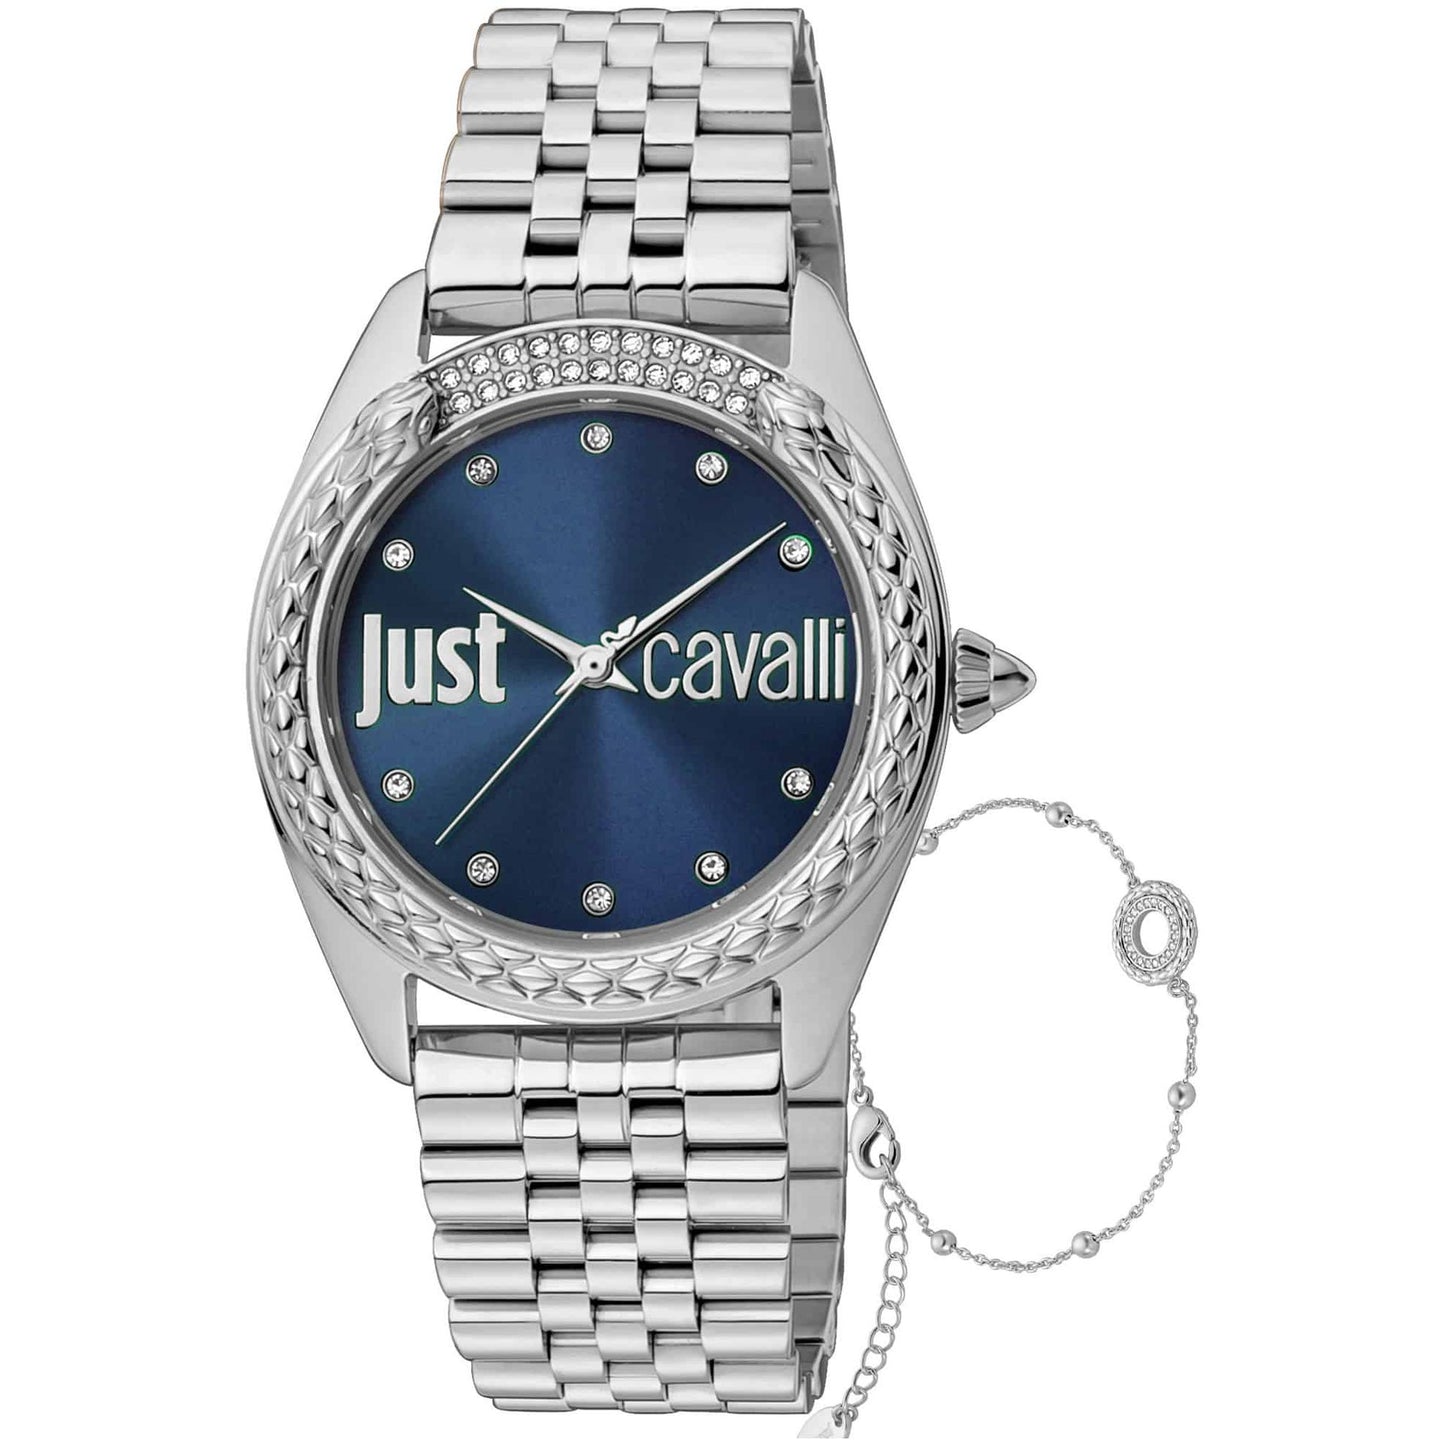 Just Cavalli Watches